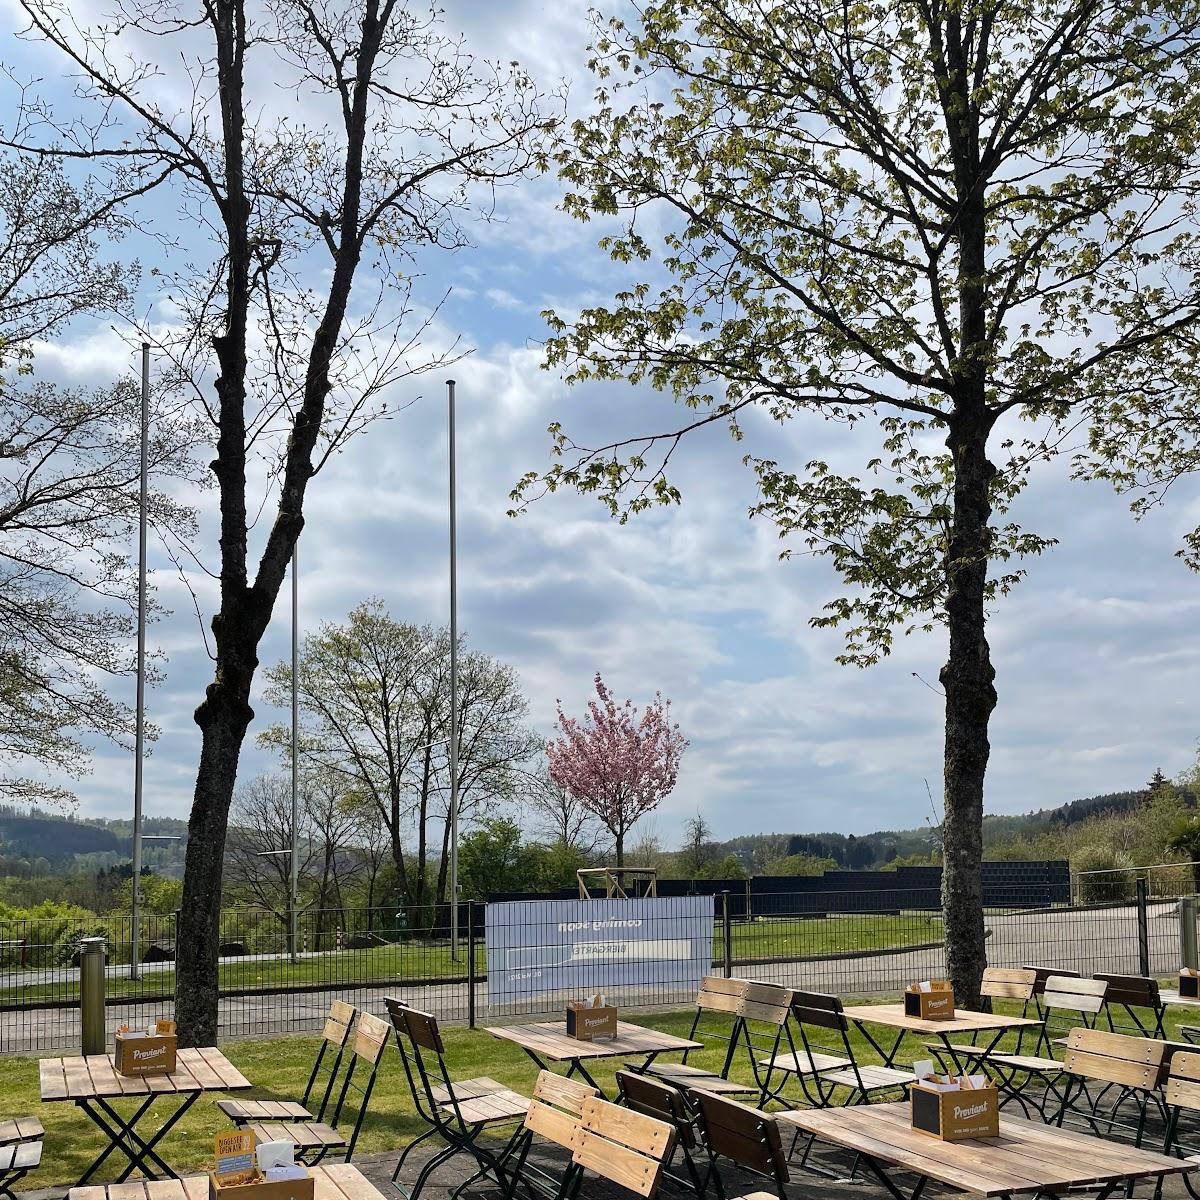 Restaurant "Biergarten am Diehlberg" in Olpe